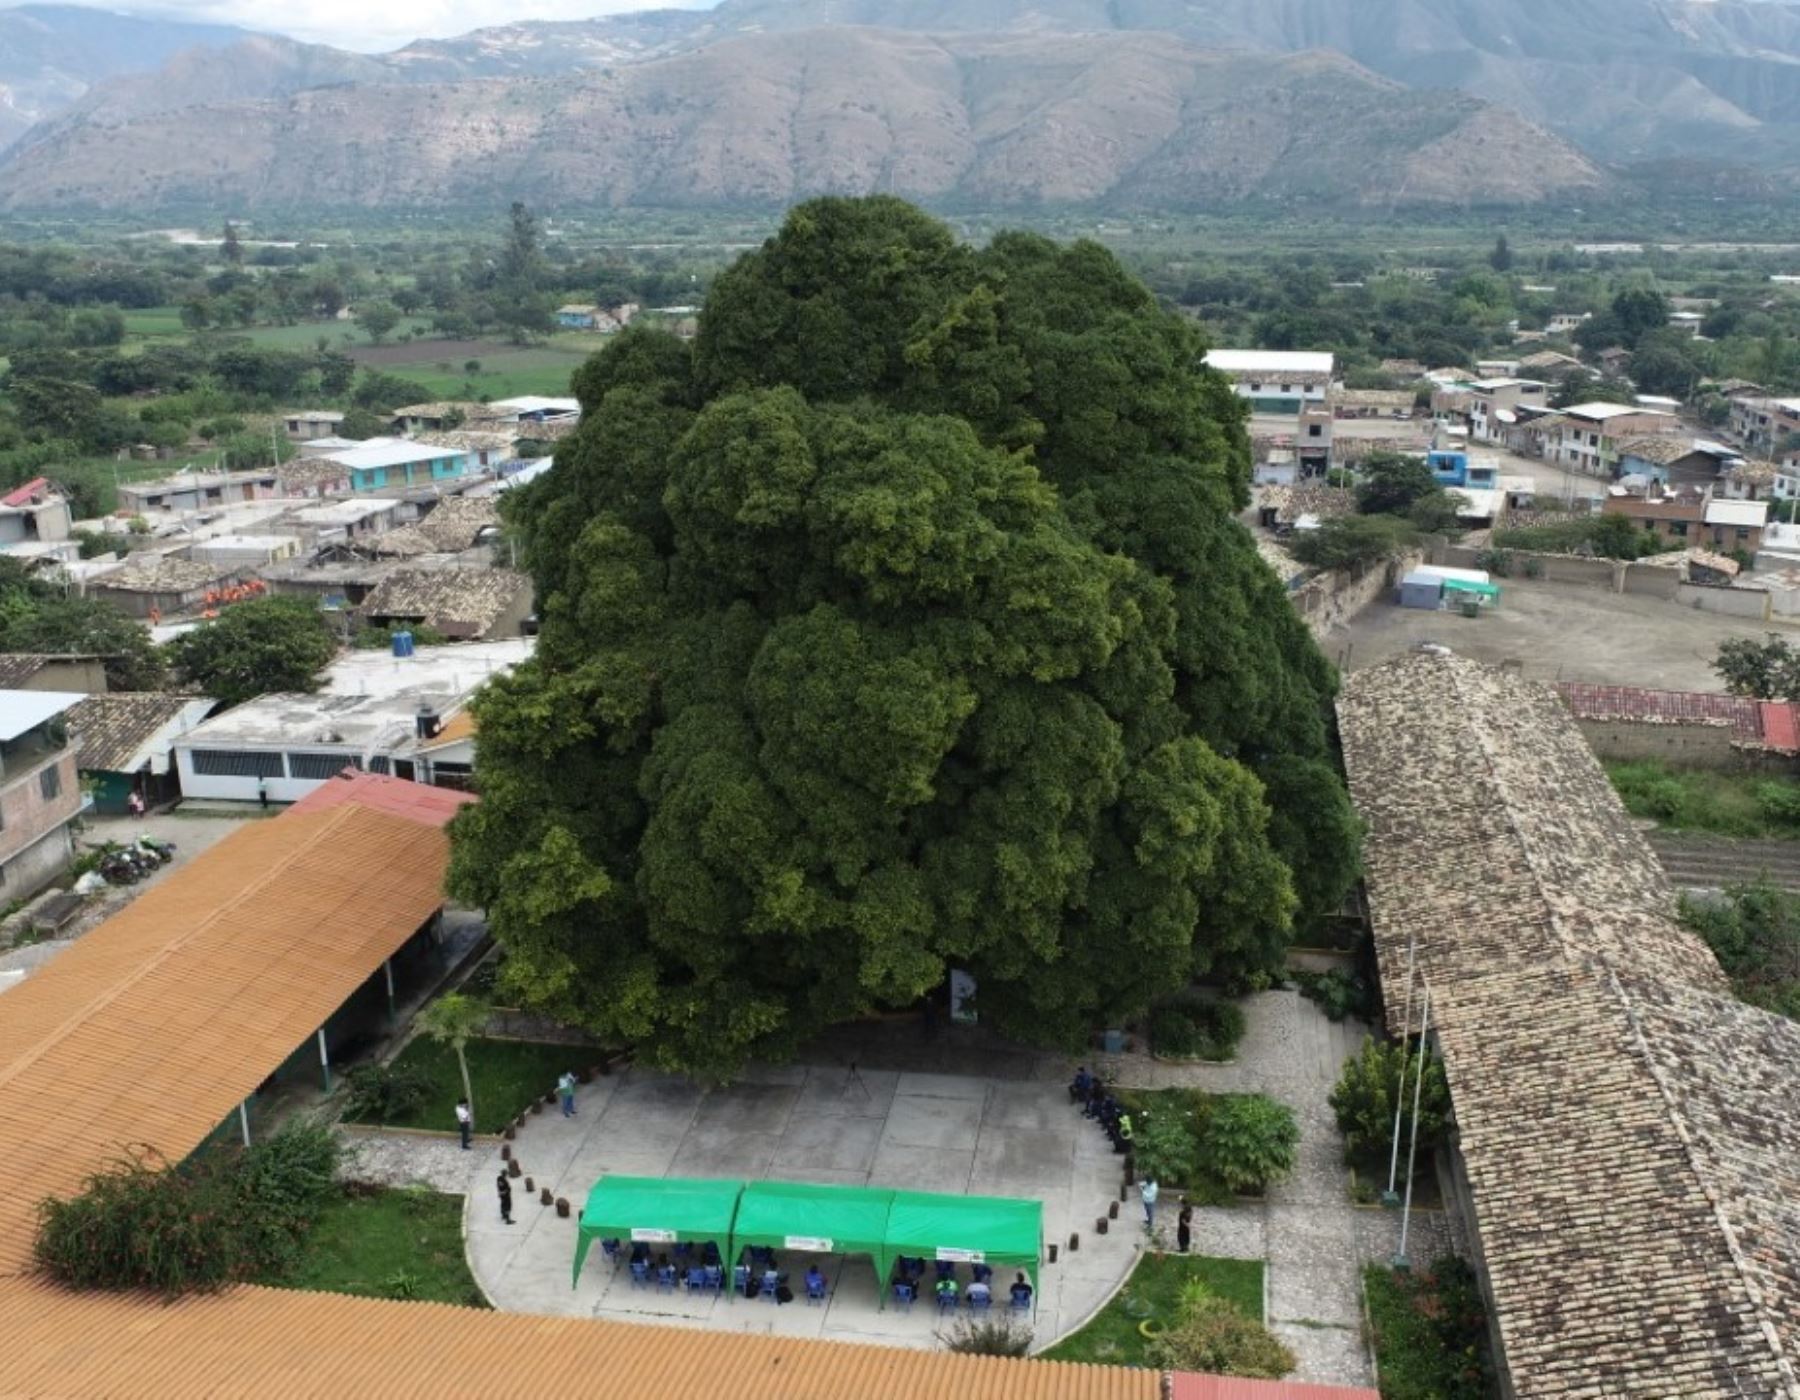 Serfor reconoció al Ficus de Malcas como el árbol patrimonial de Condebamba, distrito ubicado en la provincia de Cajabamba, región Cajamarca.